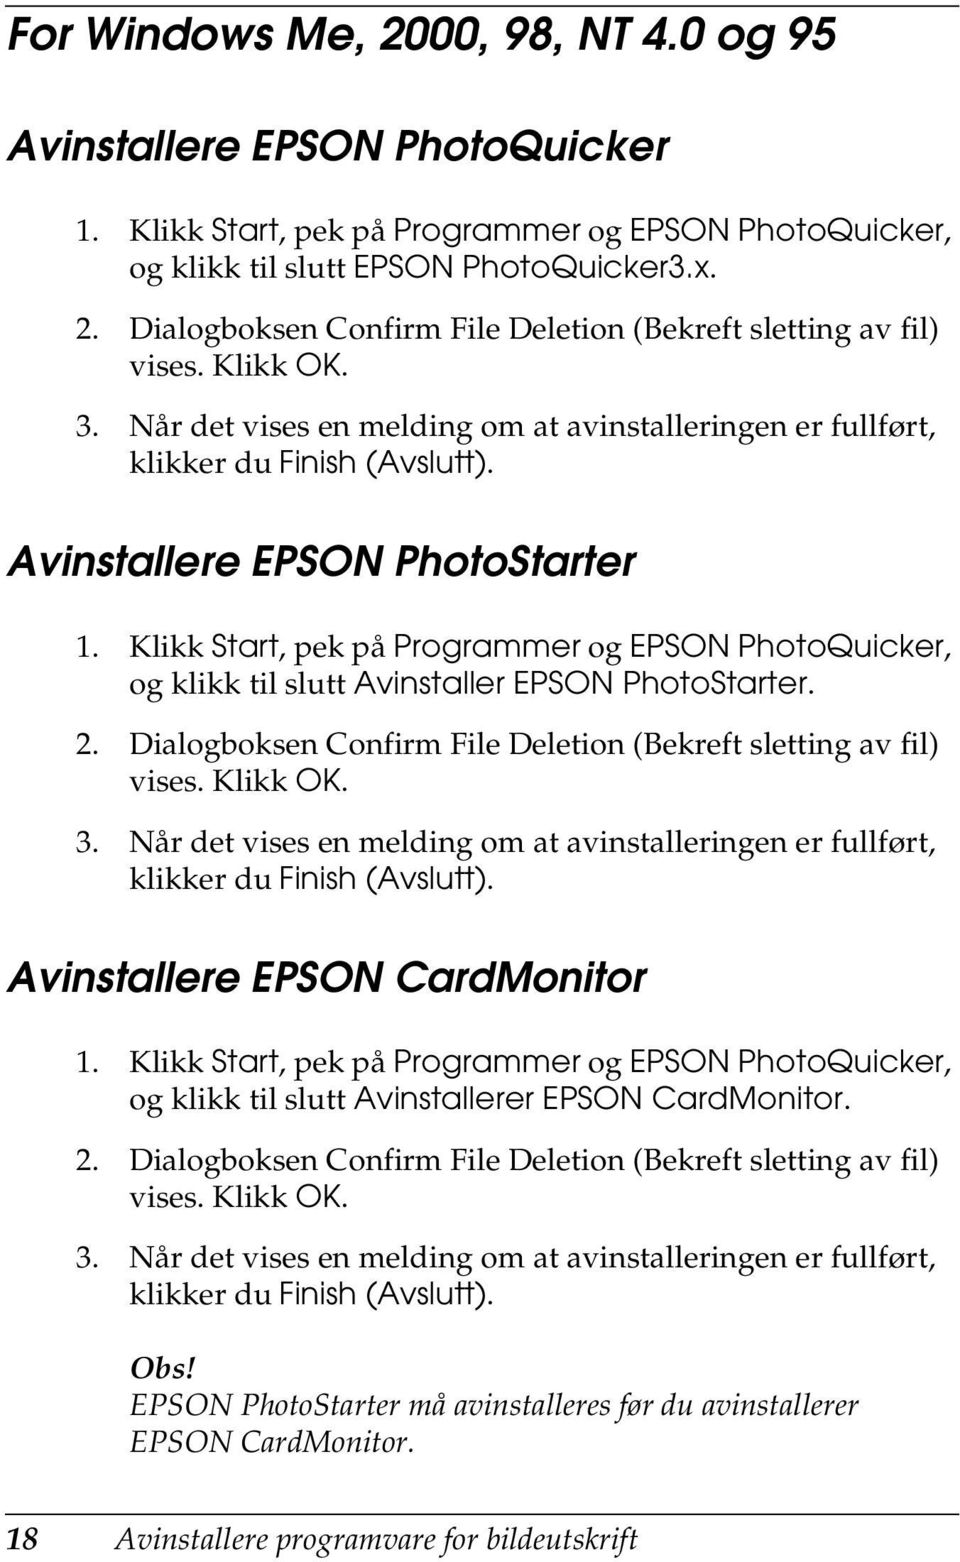 Klikk Start, pek på Programmer og EPSON PhotoQuicker, og klikk til slutt Avinstaller EPSON PhotoStarter. 2. Dialogboksen Confirm File Deletion (Bekreft sletting av fil) vises. Klikk OK. 3.